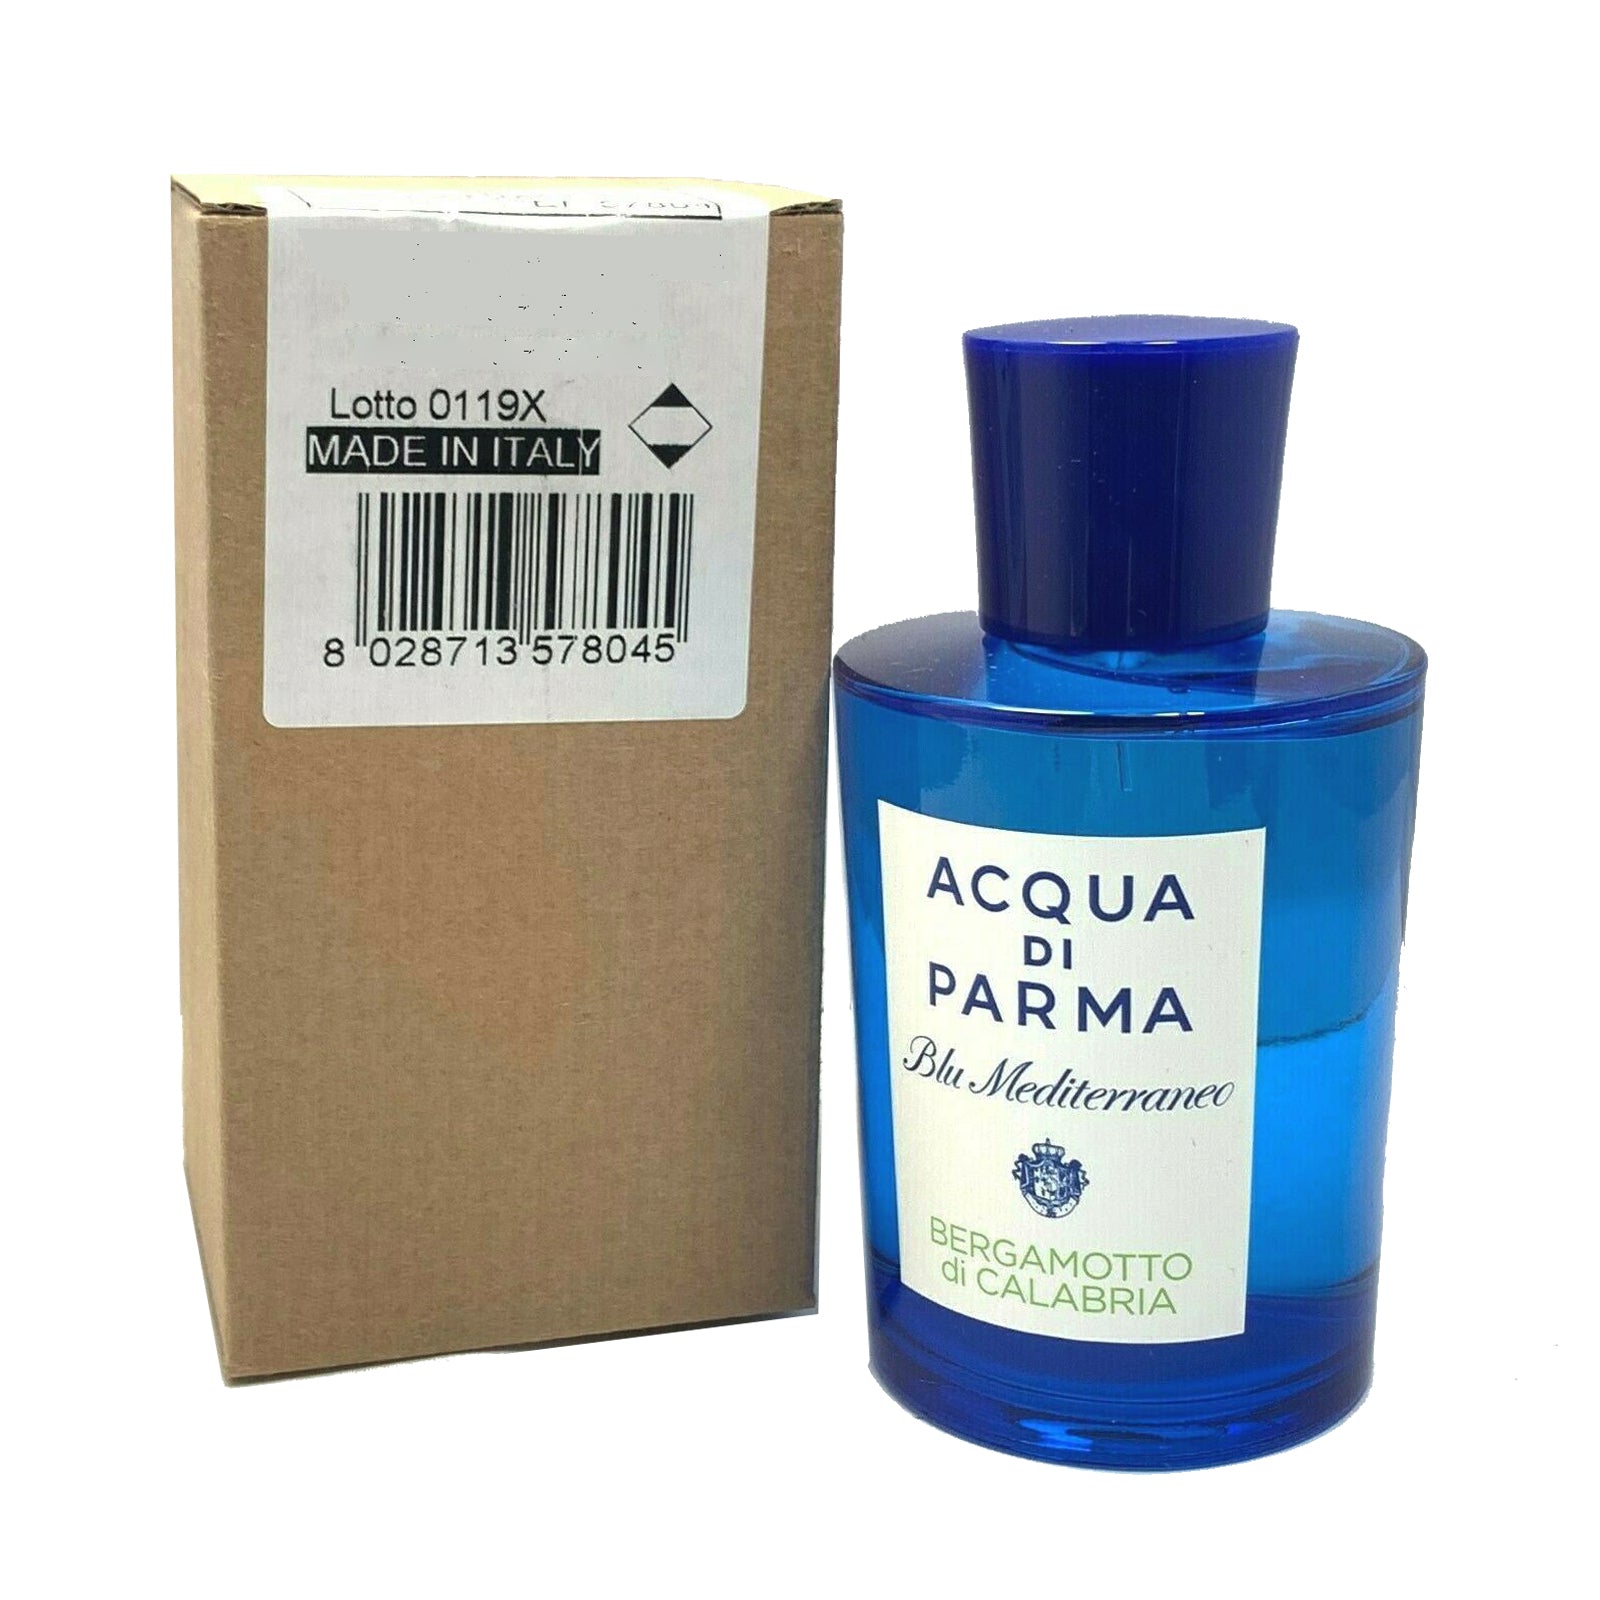 Acqua Di Parma - Blu Mediterraneo Bergamotto Di Calabria Eau De Toilette  Spray 30ml/1oz - Eau De Toilette, Free Worldwide Shipping